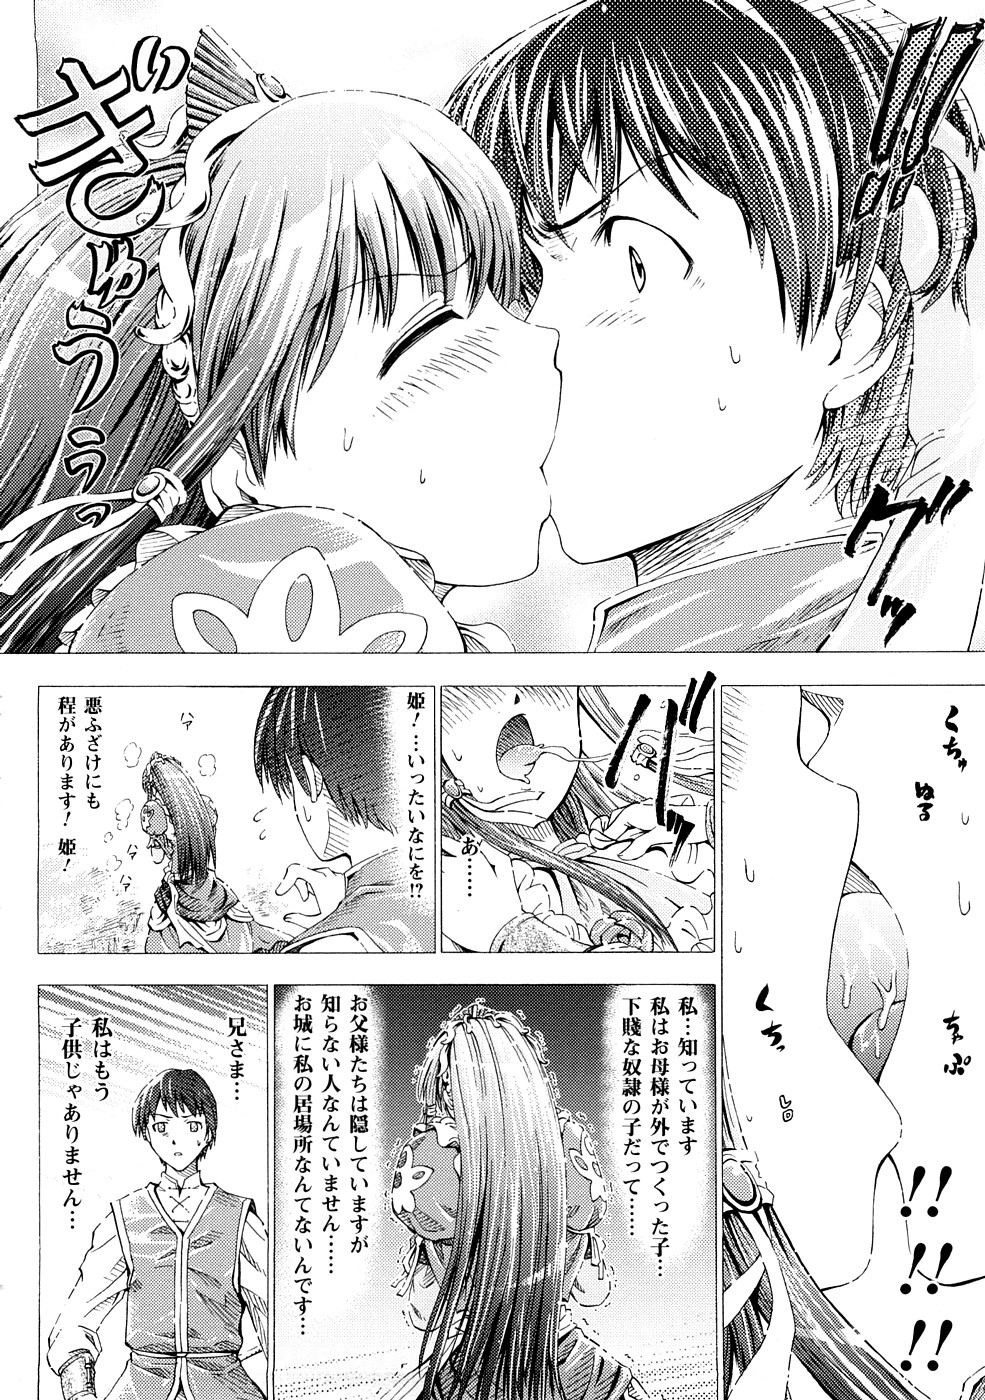 [Horitomo] Fairy Tales page 9 full